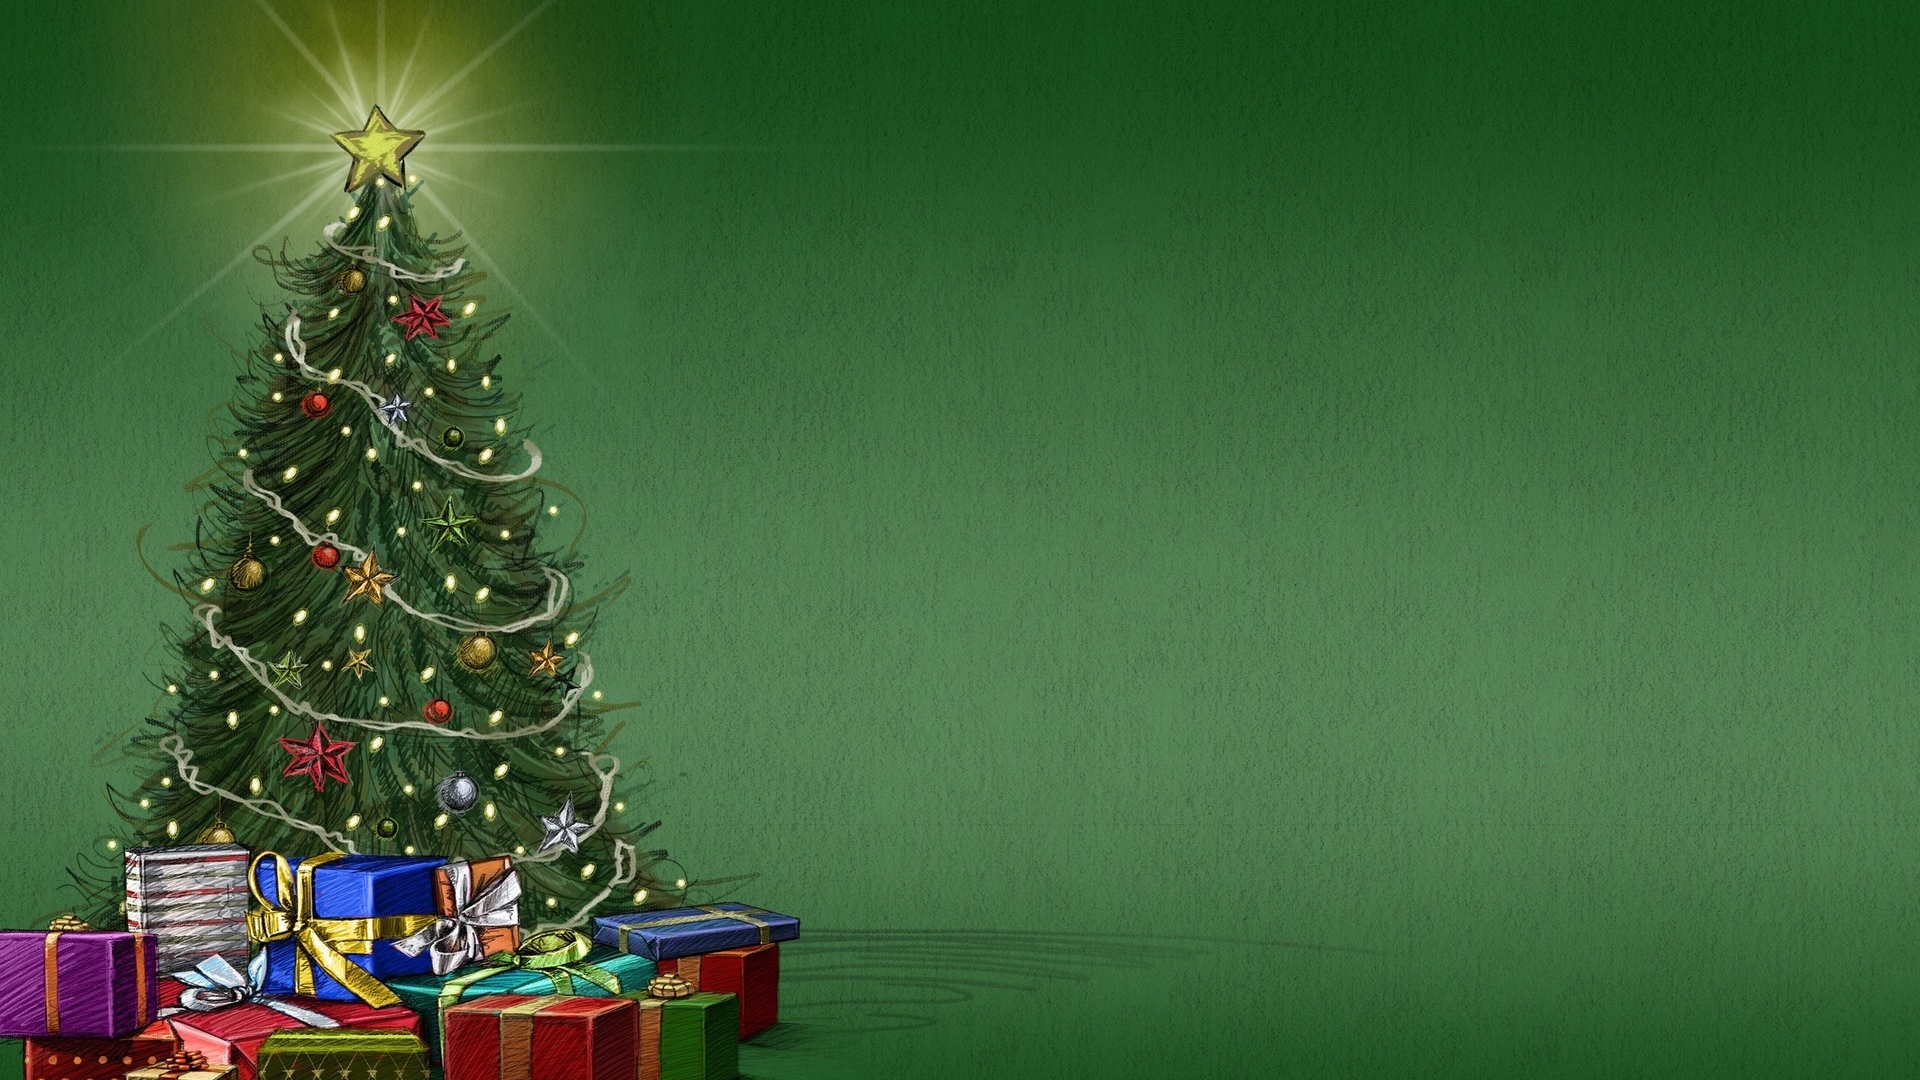 Скачать обои бесплатно Праздники, Елки, Рождество (Christmas Xmas), Новый Год (New Year) картинка на рабочий стол ПК